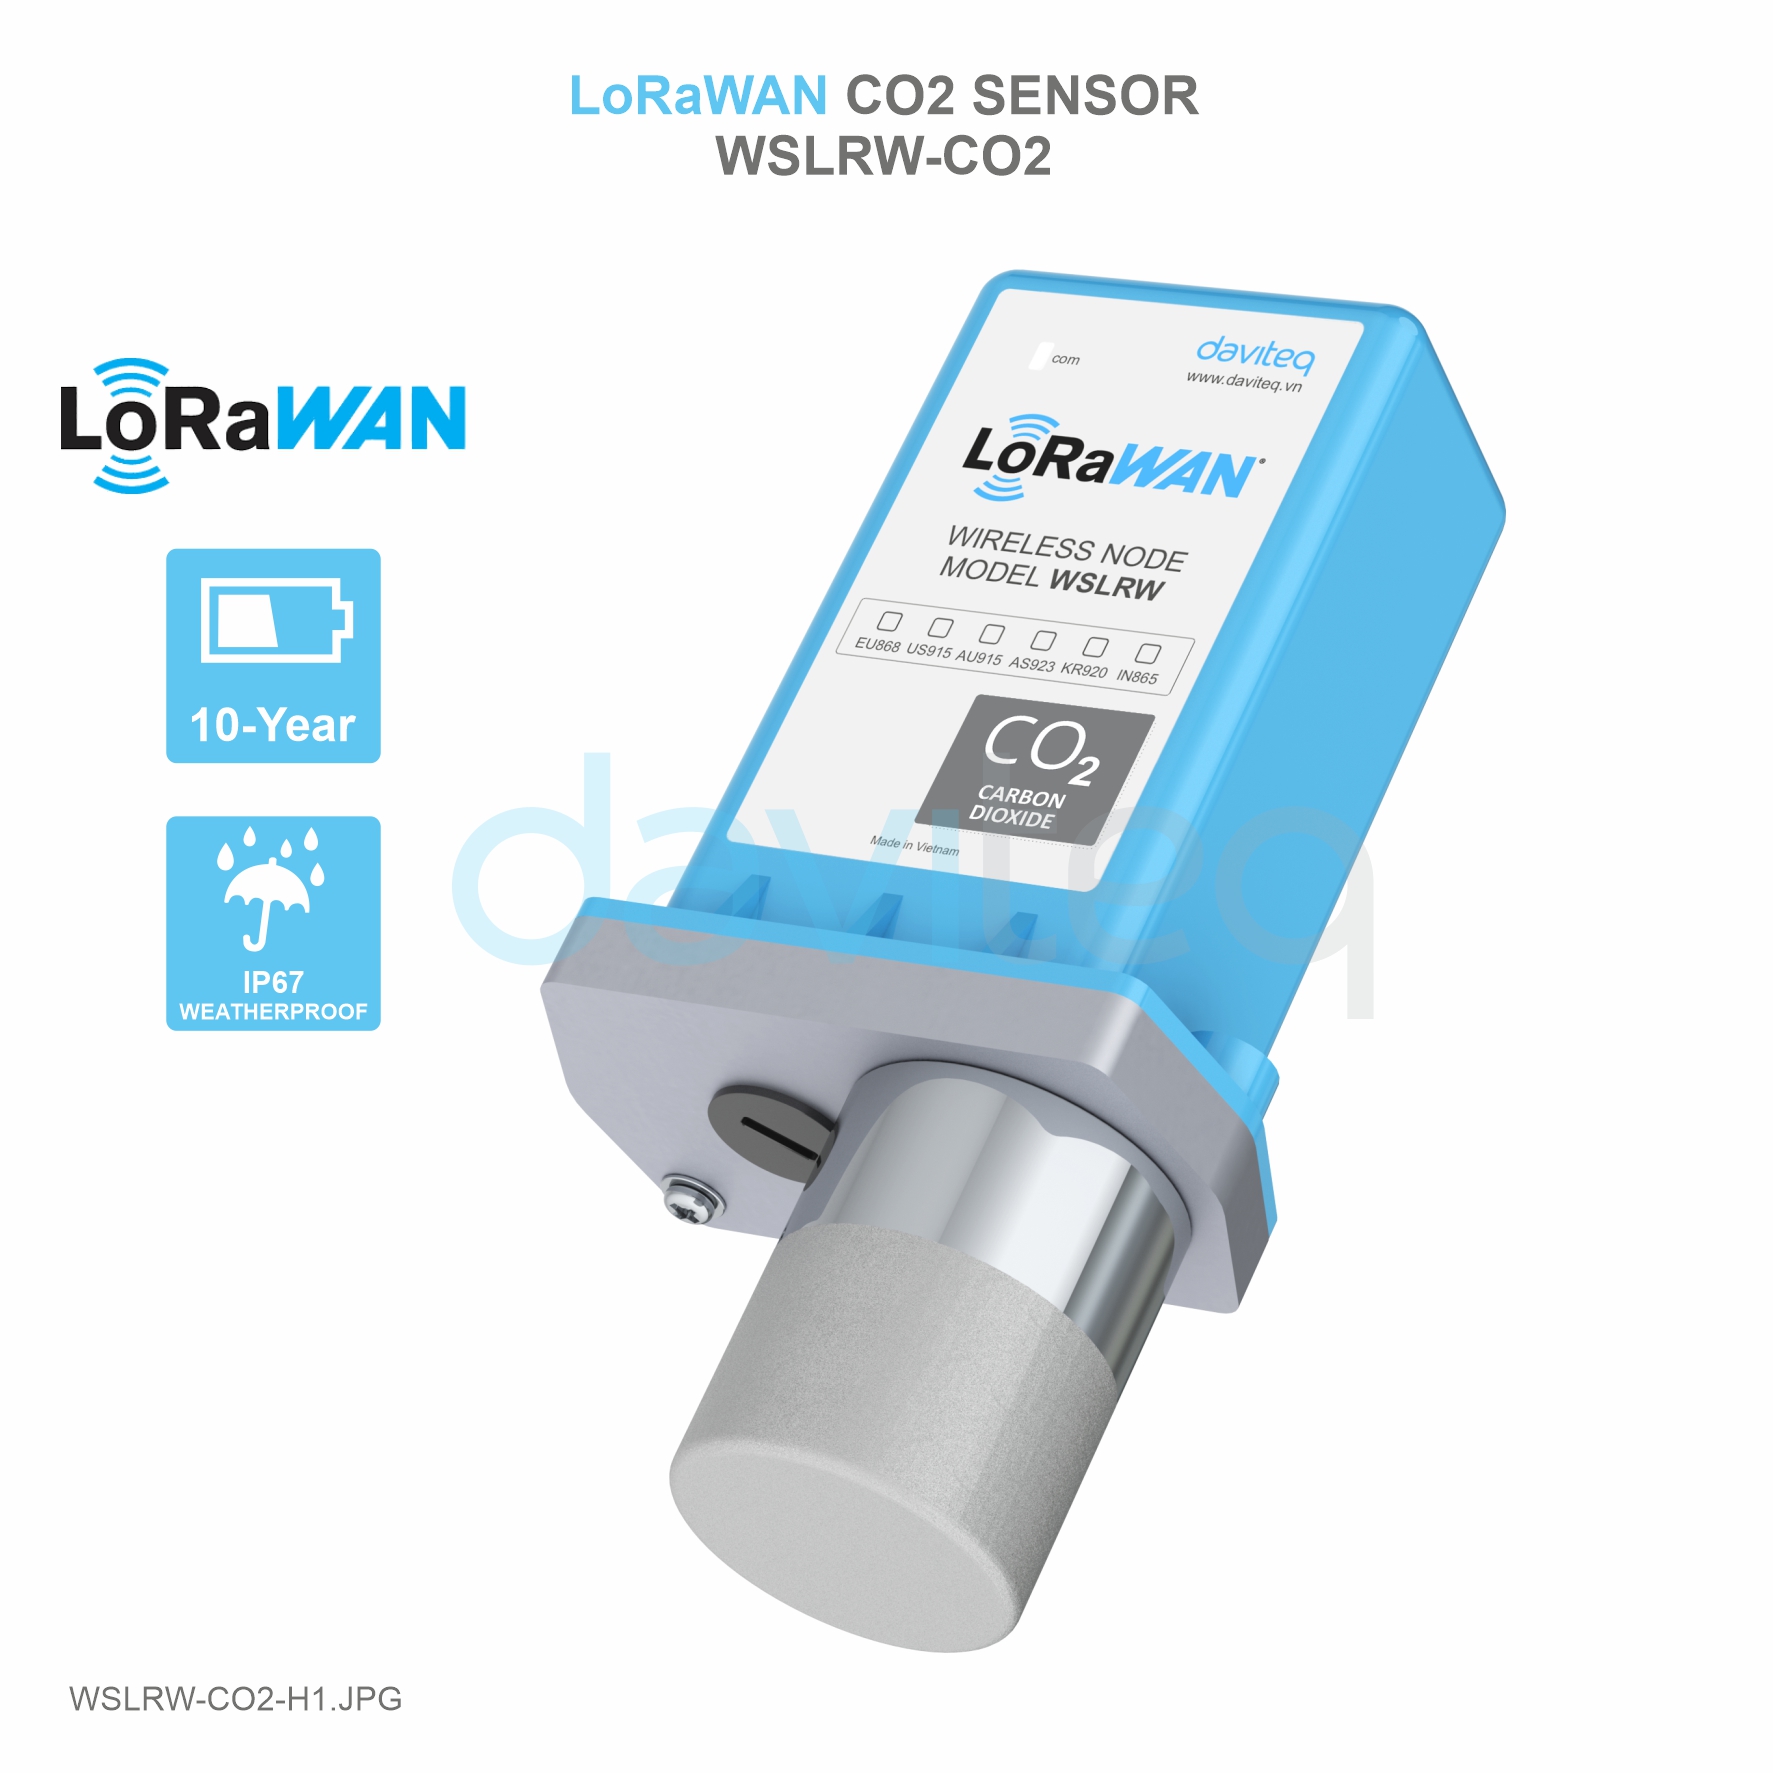 Cảm biến LoRaWAN đo CO2